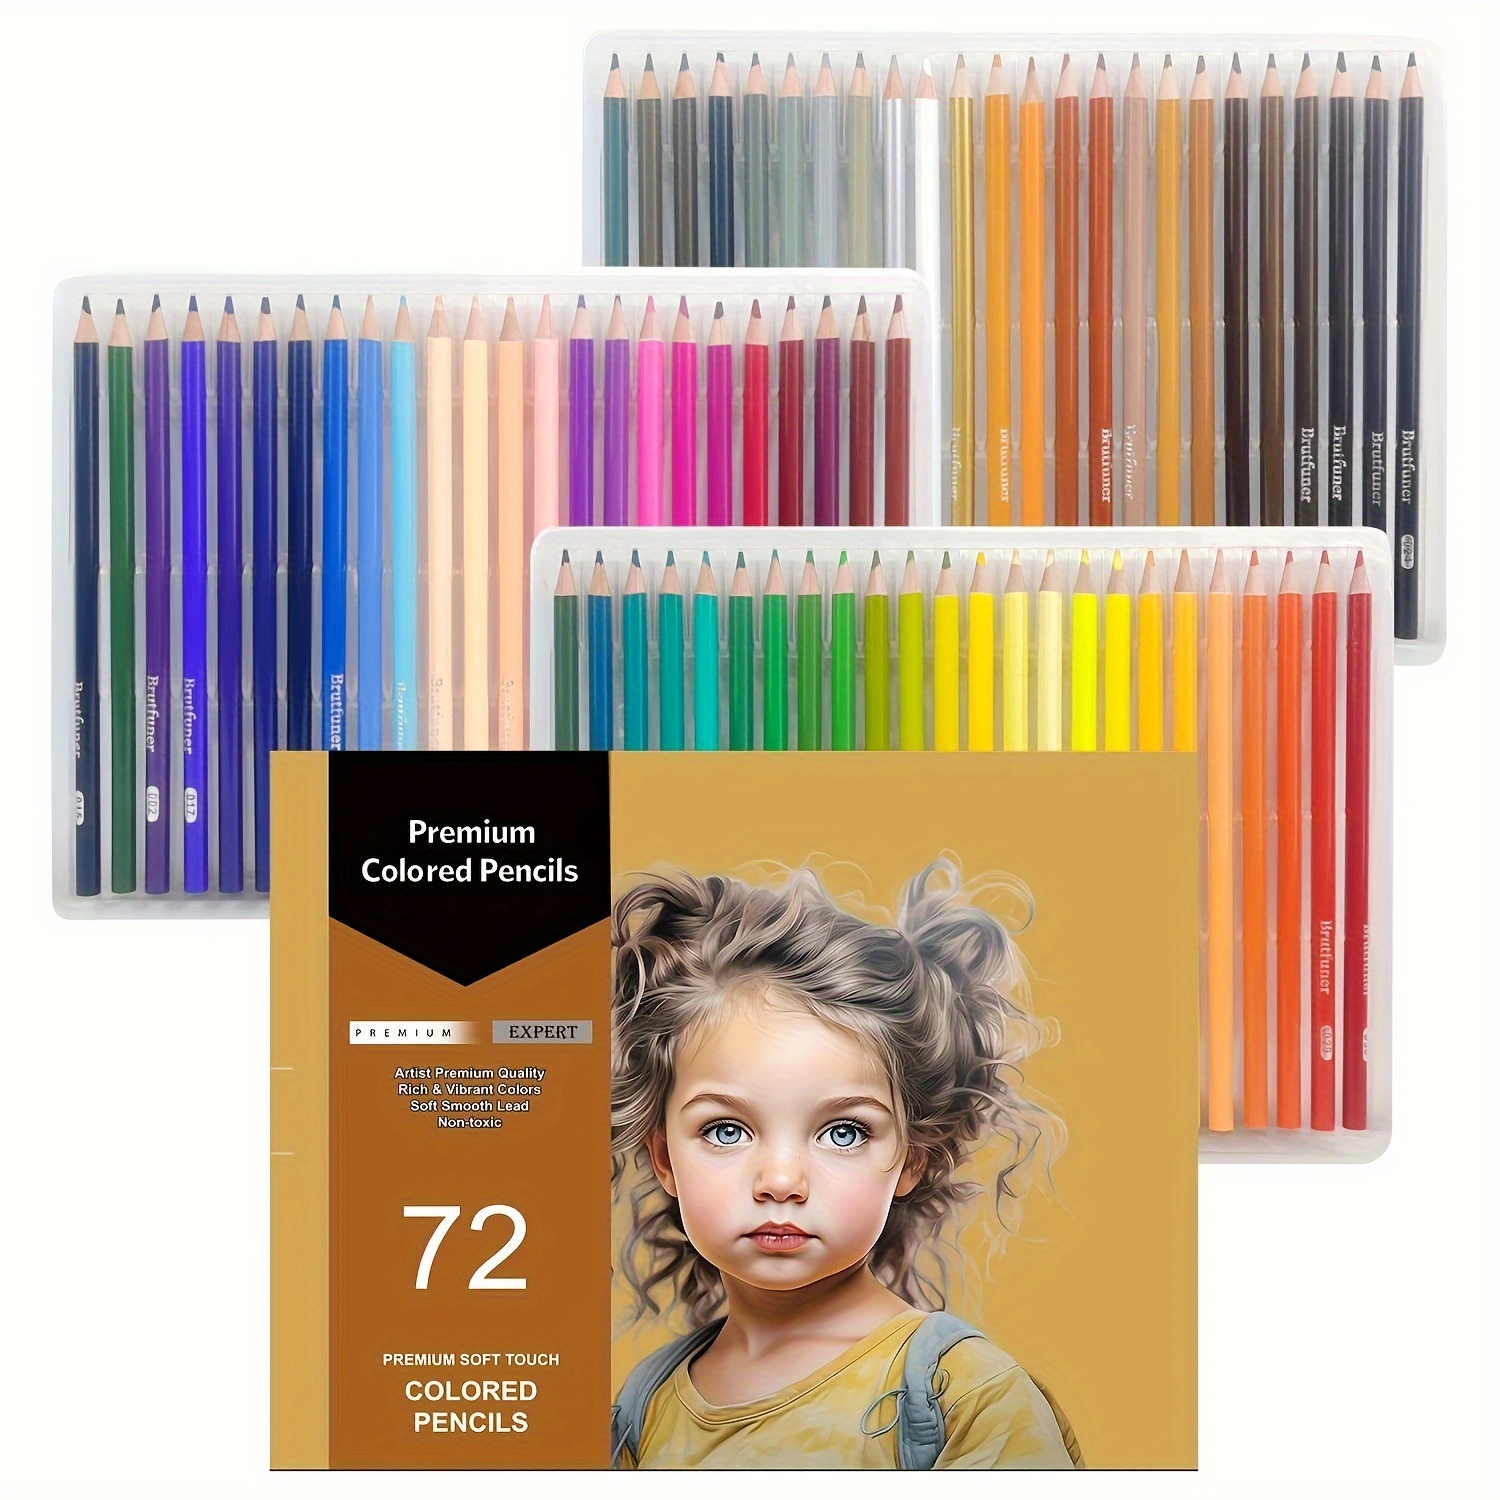 8 Largement Meilleur Crayon De Couleur Pour Coloriage Adulte Collection   Coloriage, Pages de coloration imprimables gratuites, Crayon de couleur